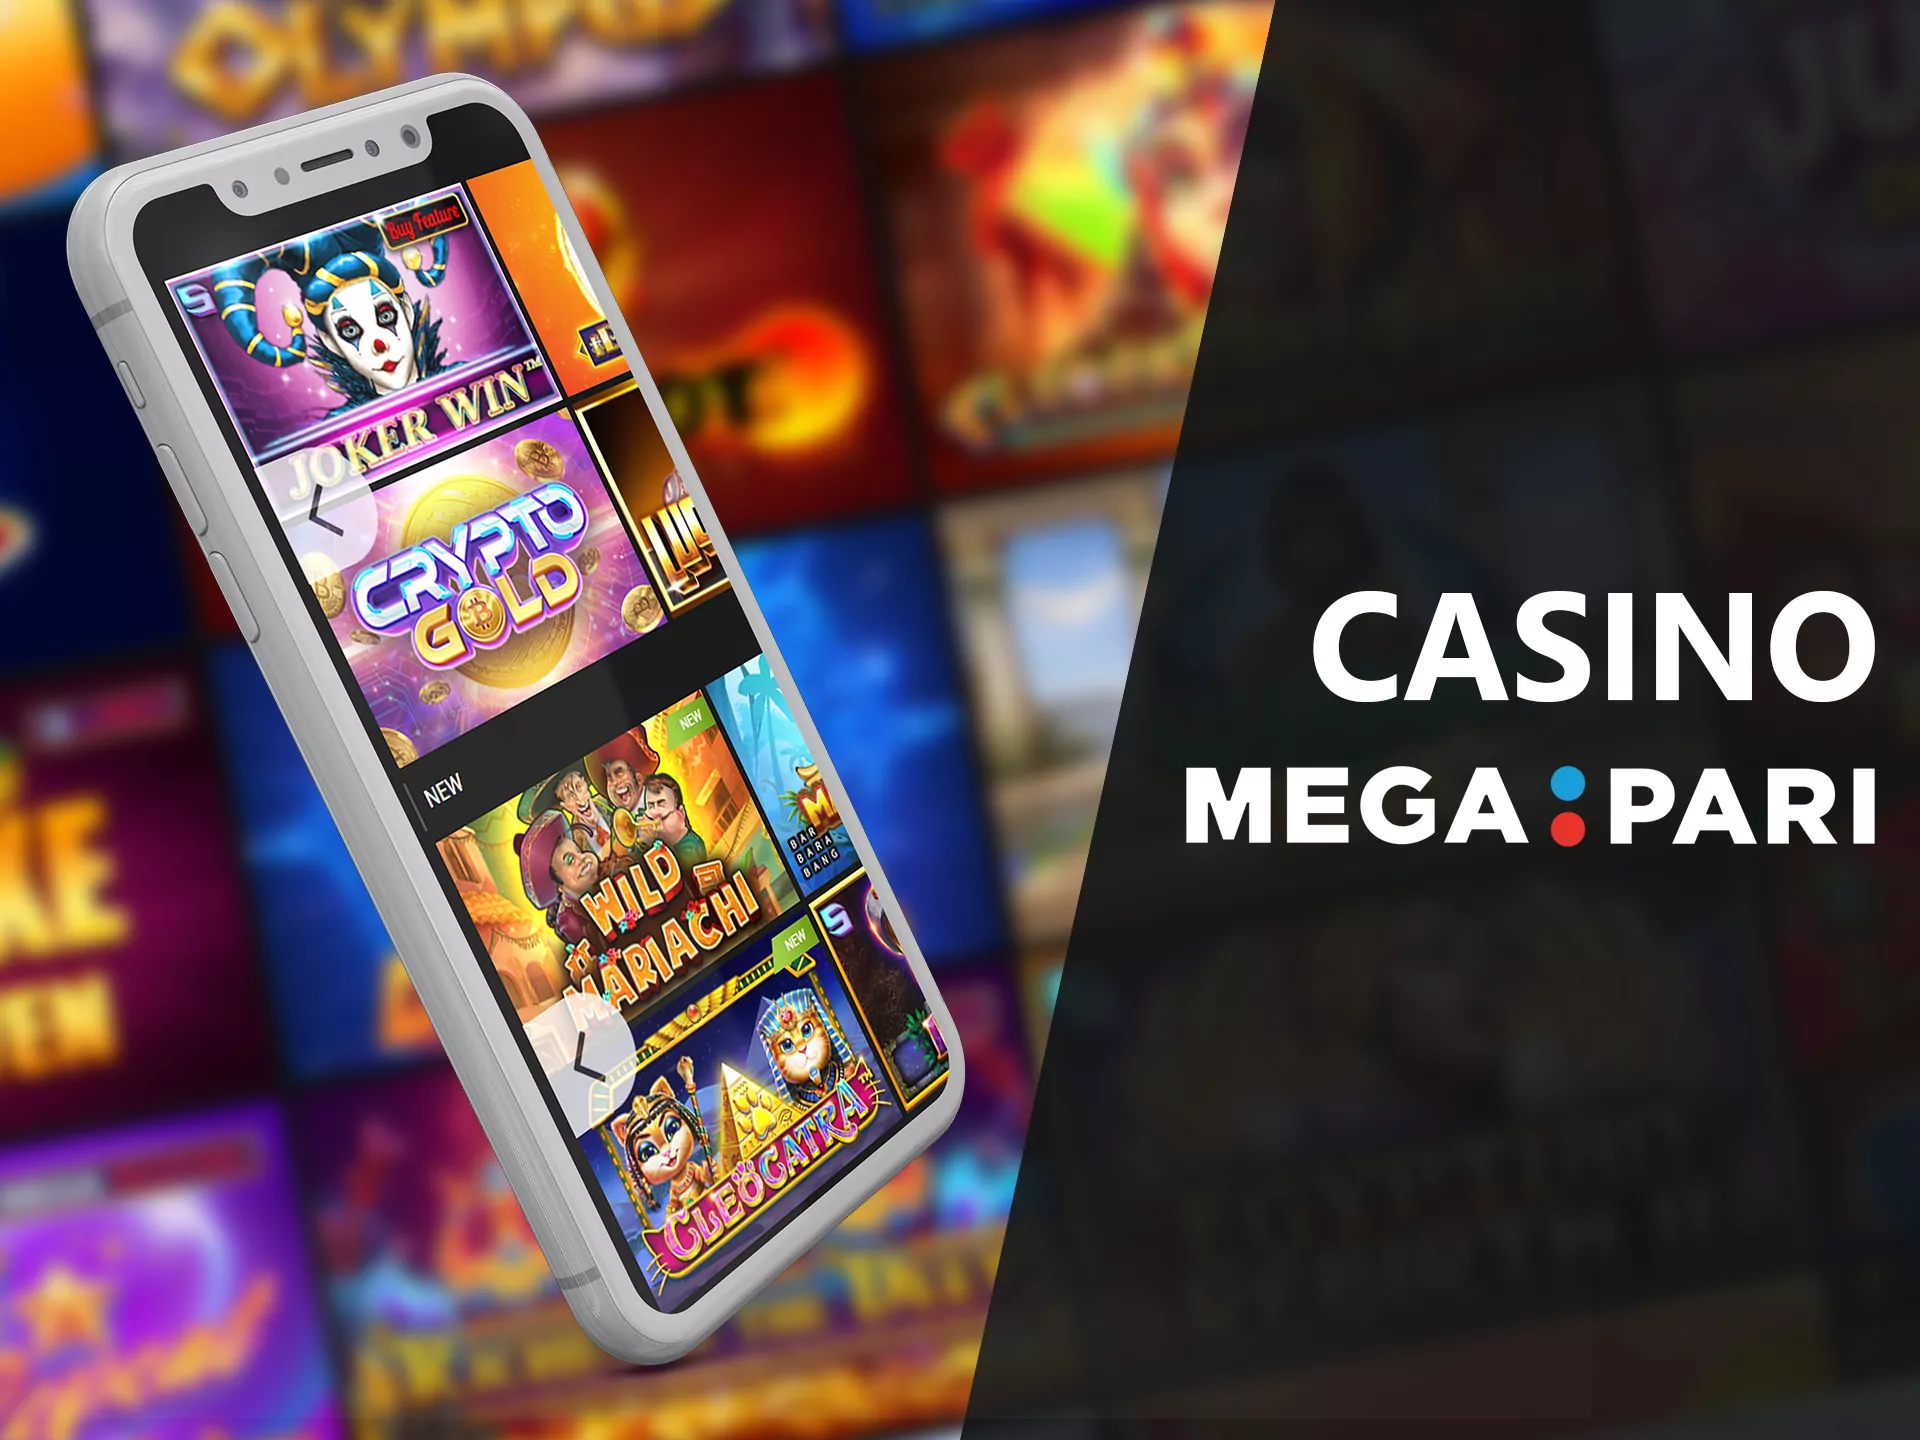 List of casino games in the Megapari casino app.